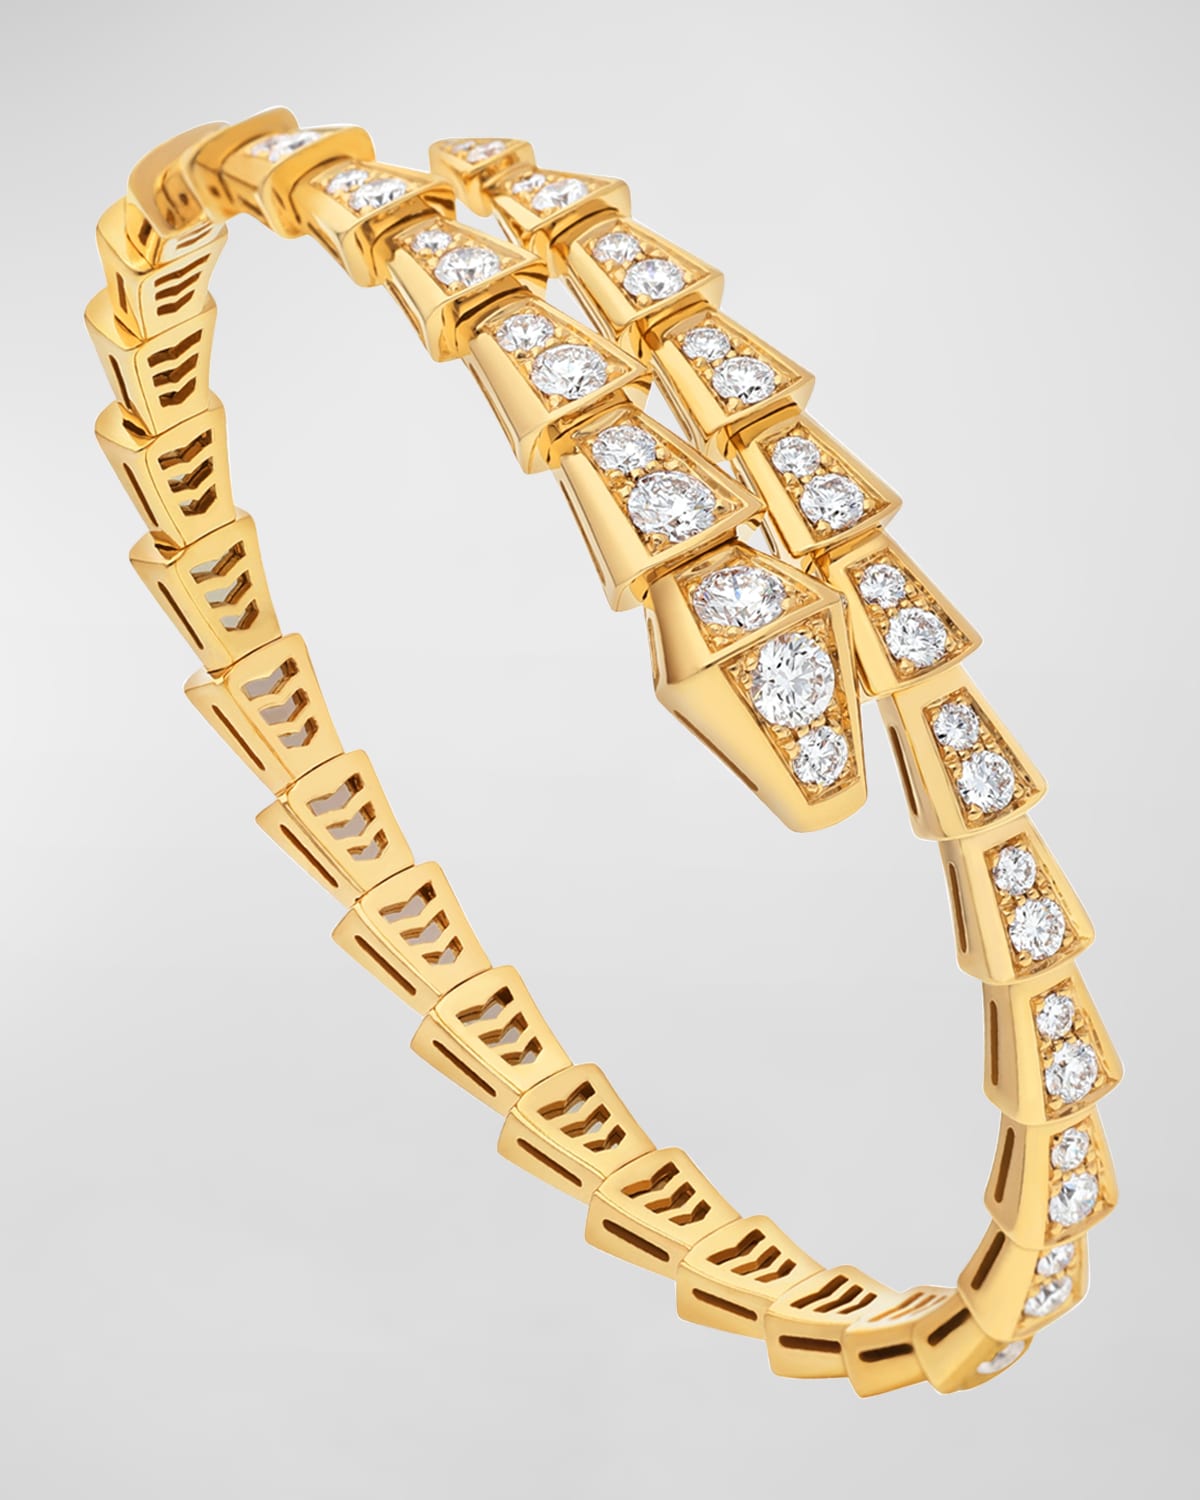 Serpenti Viper Yellow Gold Diamond Bypass Bangle, Size M